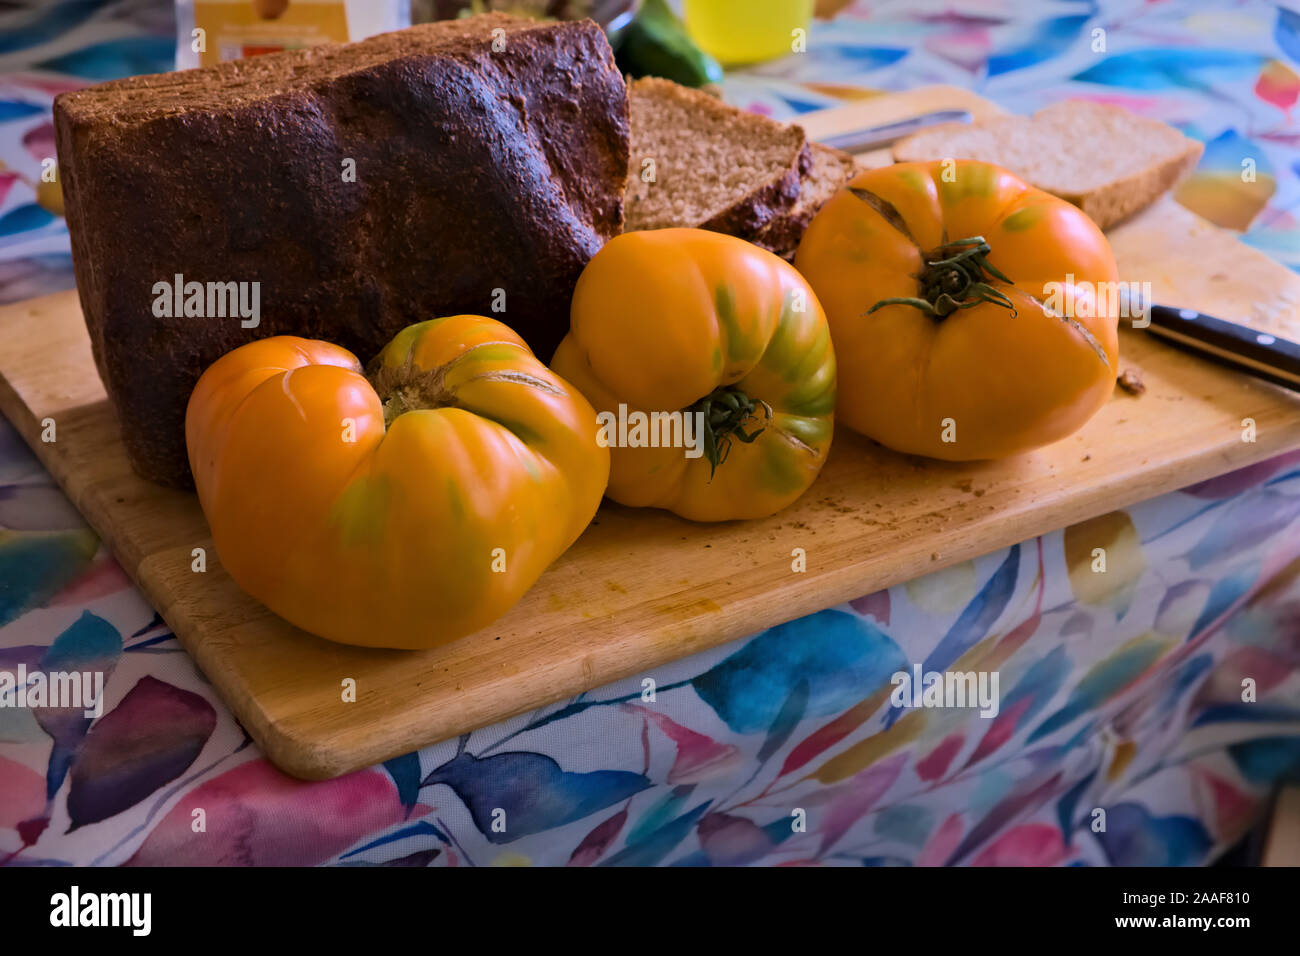 Tomates Beefsteak jaune pour le déjeuner - Solanum lycopersicum 'Coeur de boeuf Orange' avec du pain au levain Banque D'Images